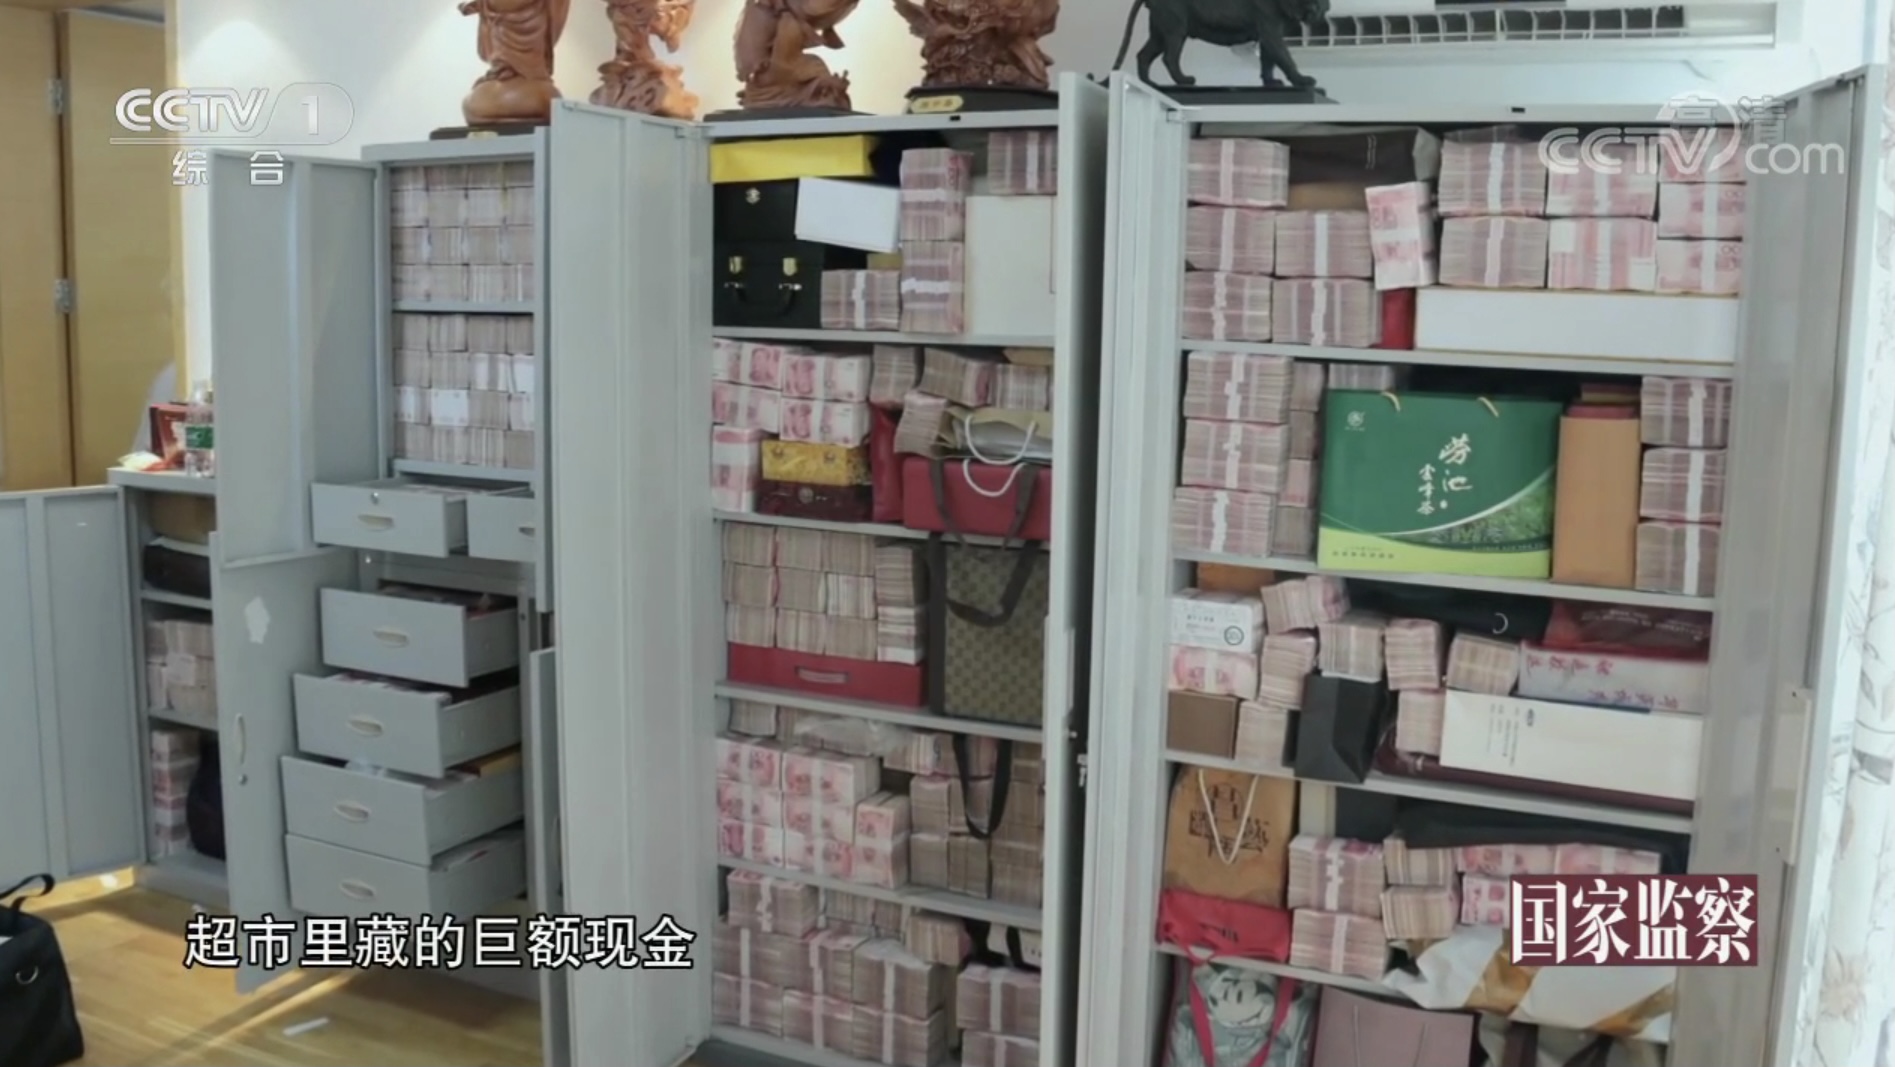  라이 전 회장의 ‘마트’에서 발견된 현금 (출처 : CCTV)